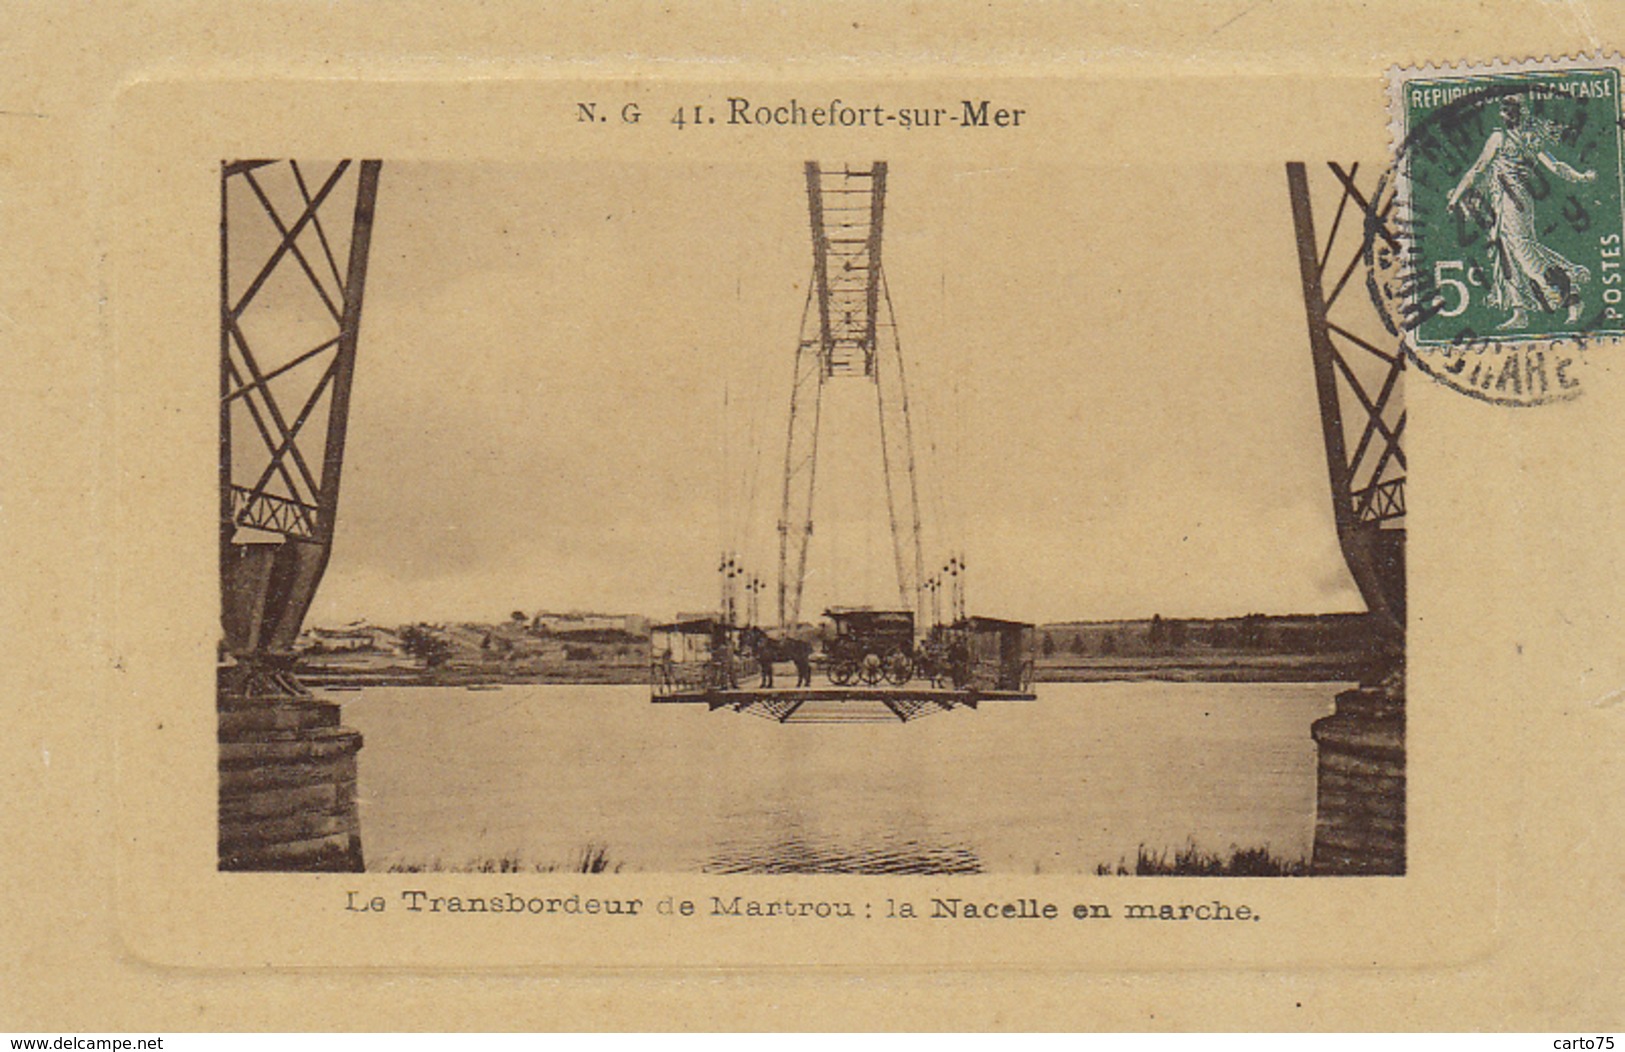 Rochefort-sur-Mer 17 - Pont Transbordeur Martrou Nacelle En Marche - Editeur NG 41 - 1912 -  édition Spéciale "cadre" - Rochefort